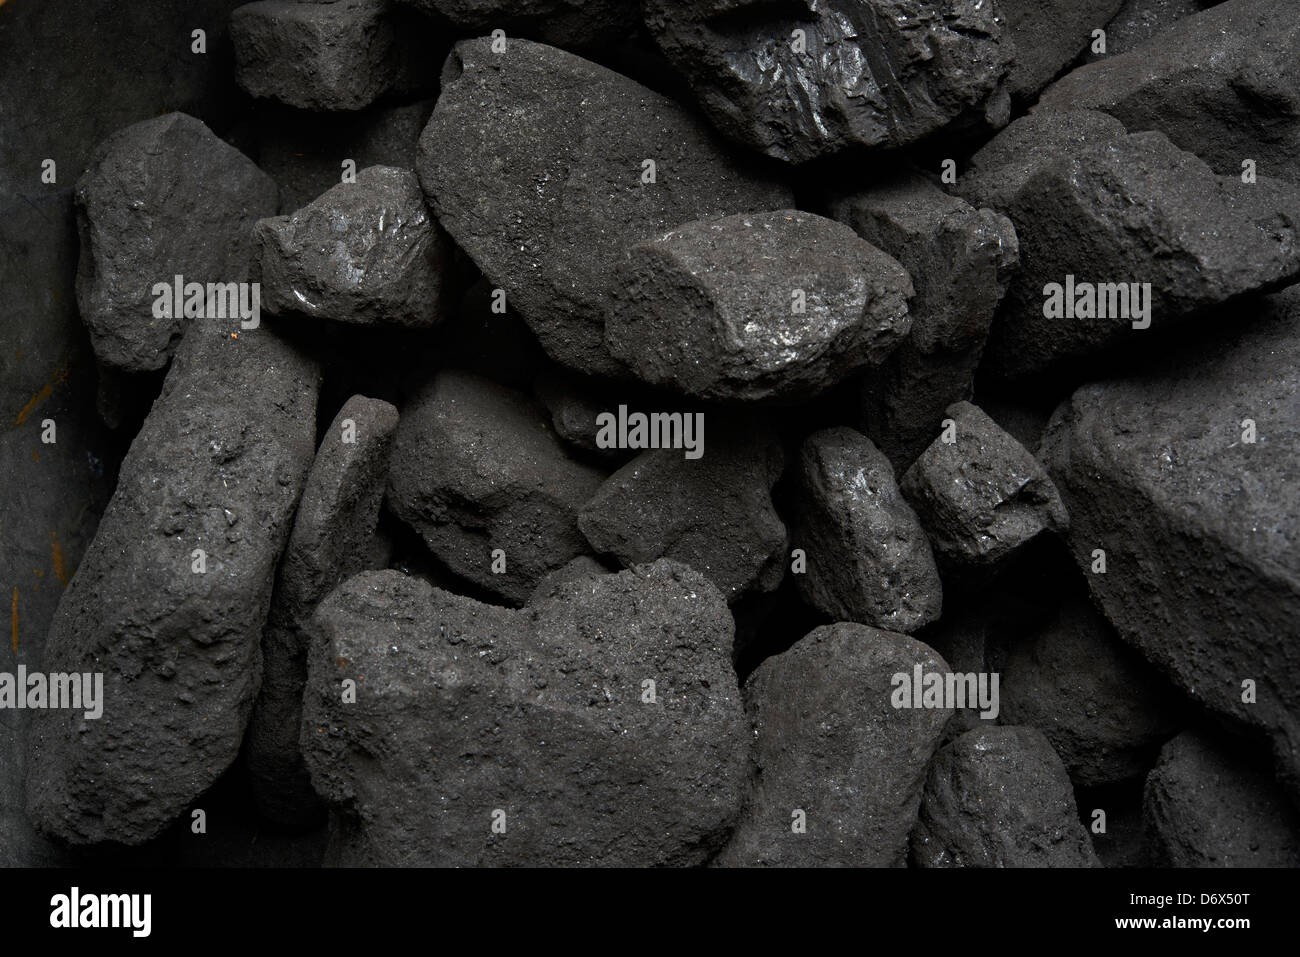 Coal close up Stock Photo